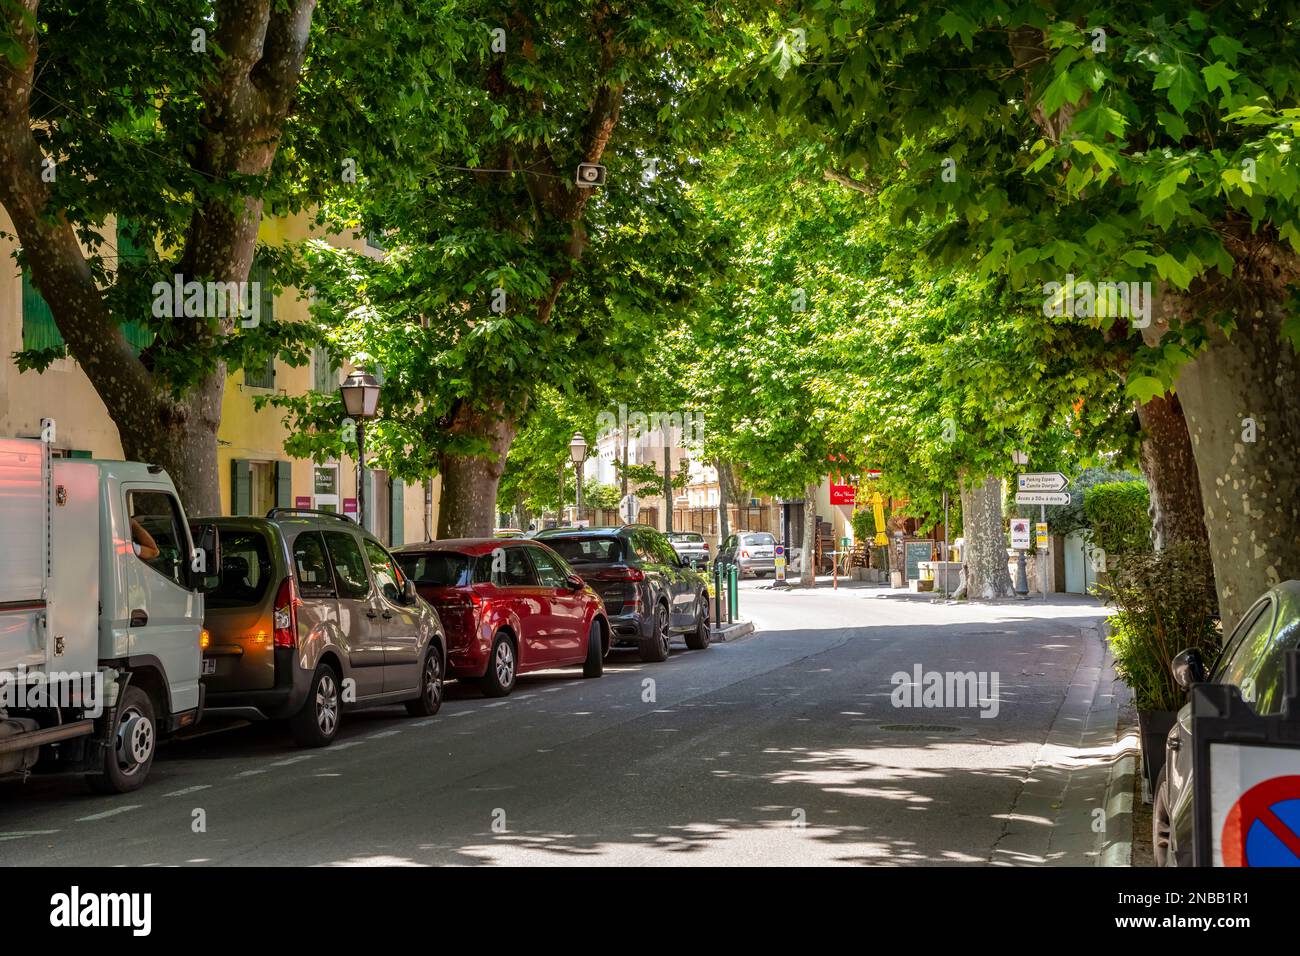 Une rue ombragée bordée d'arbres dans la vieille ville historique de Saint-Rémy-de-Provence, France. Banque D'Images